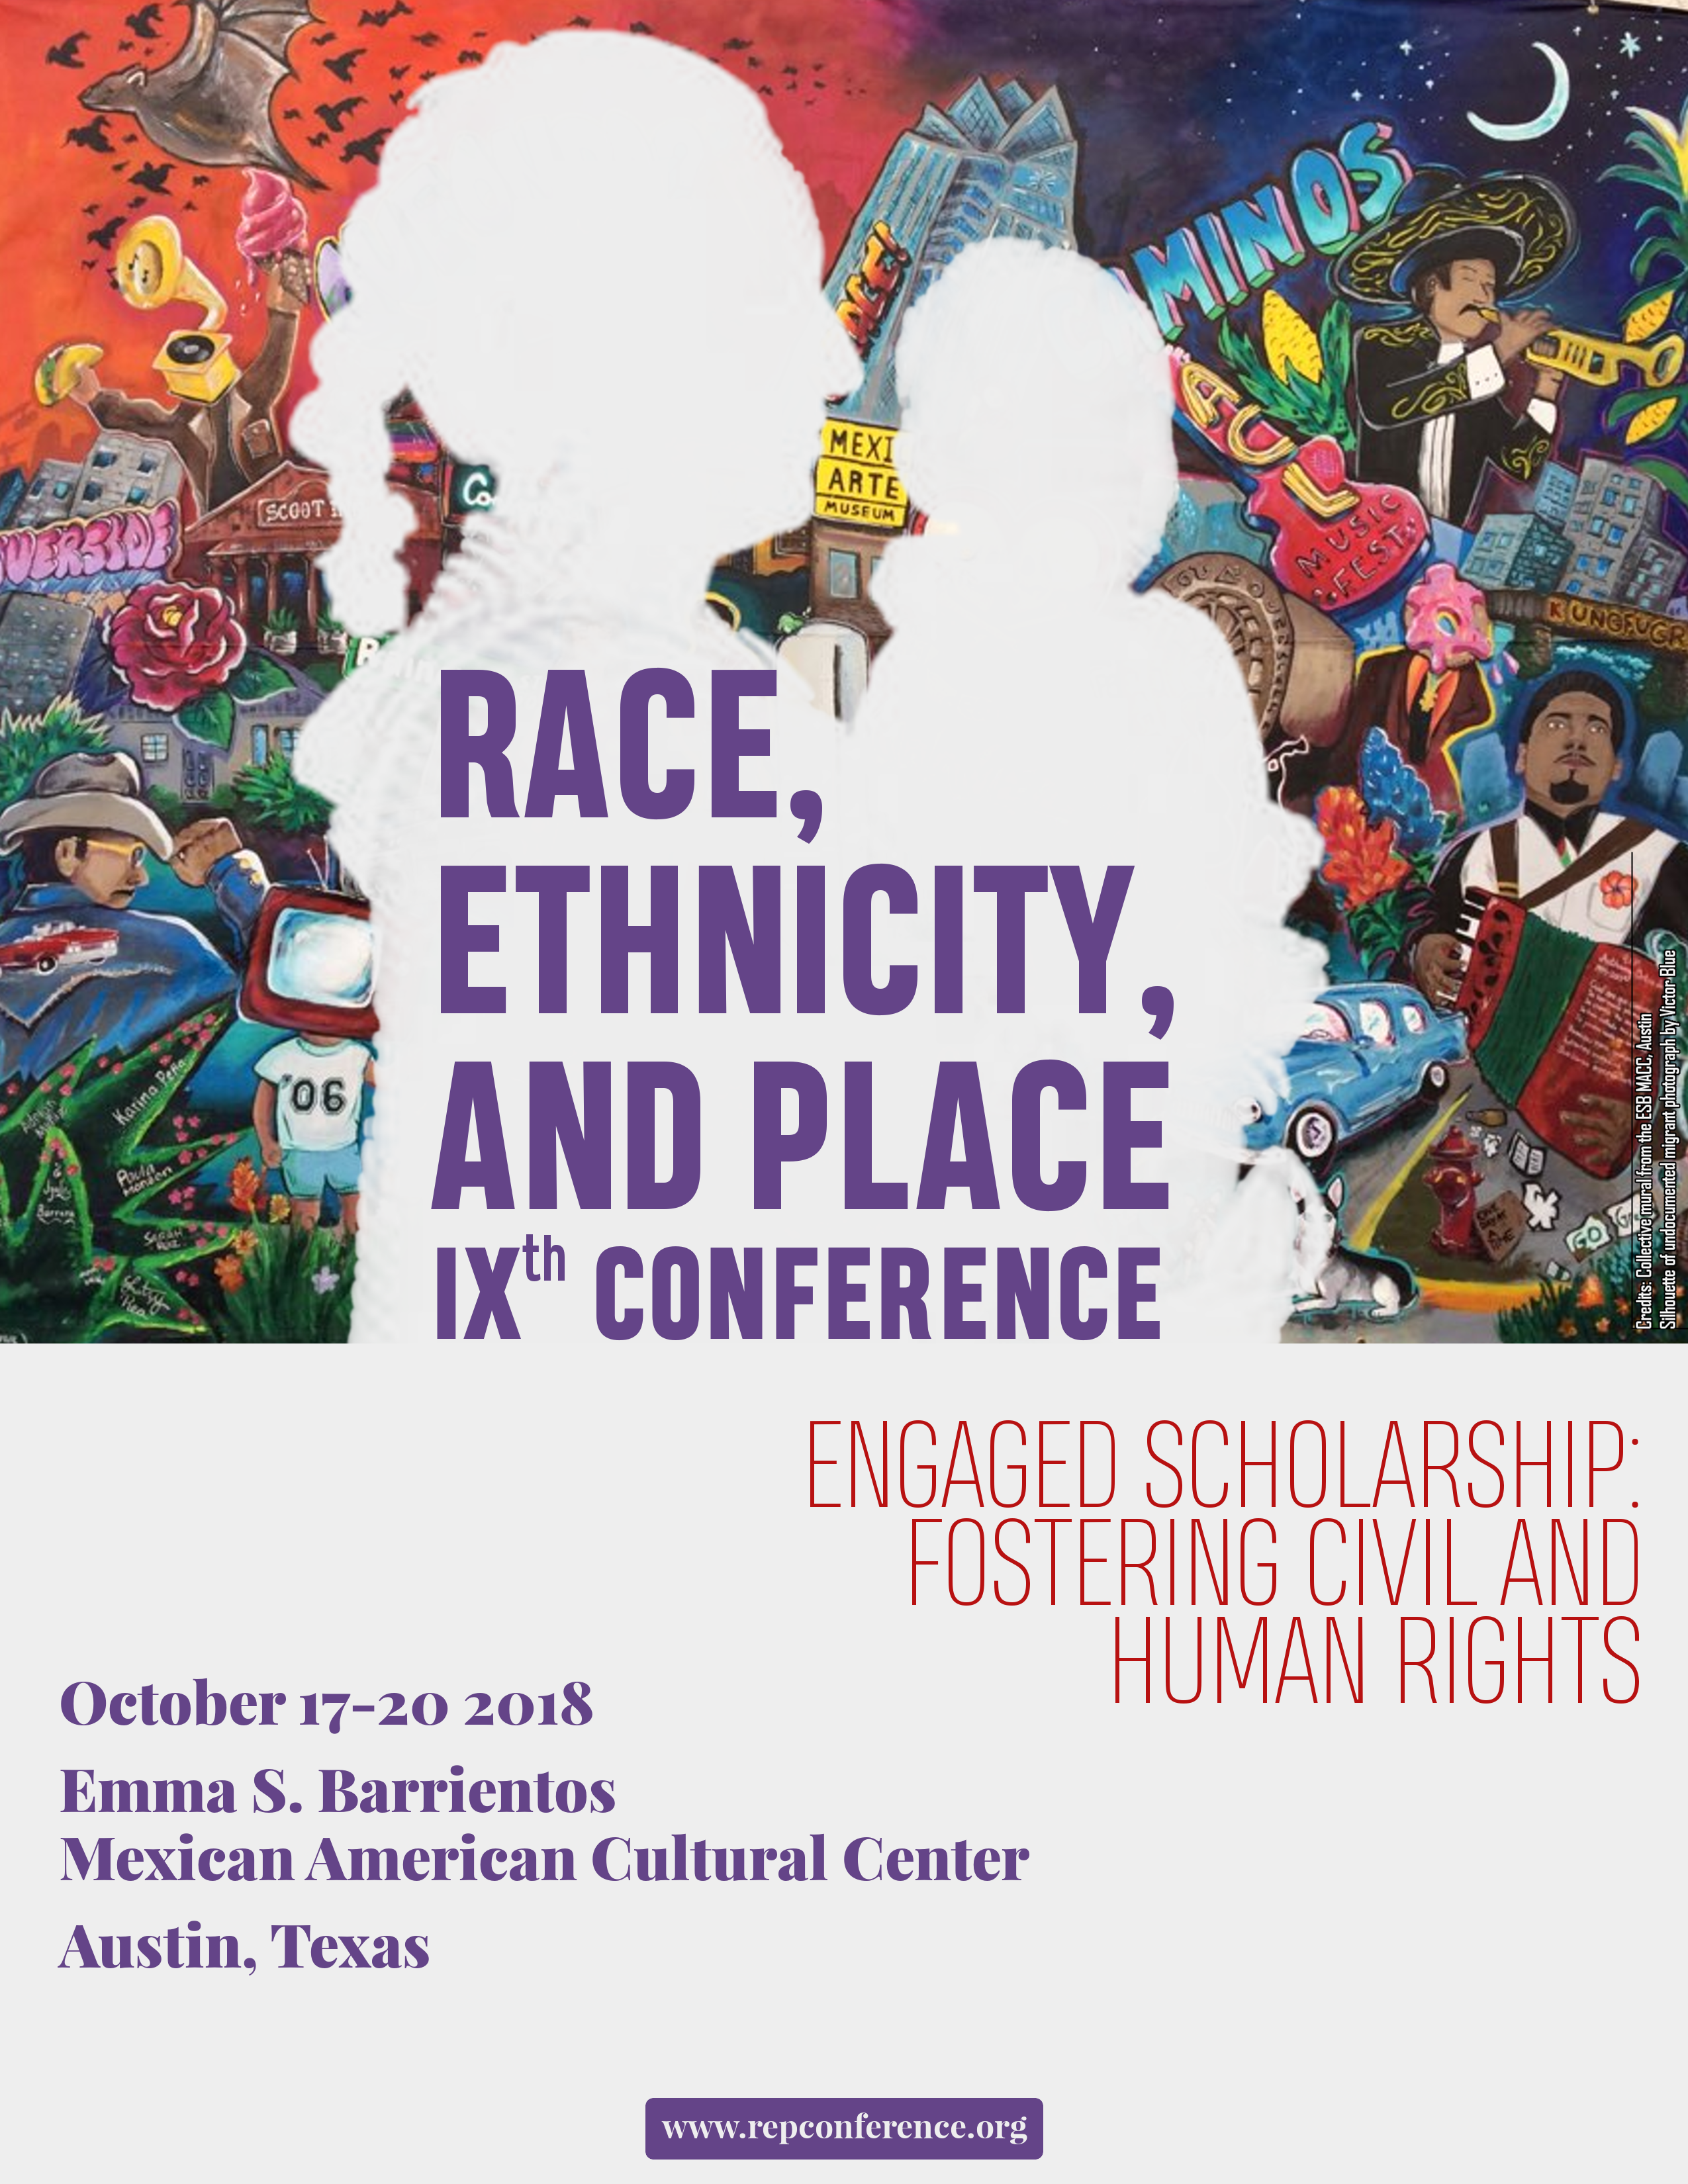 Affiche de la IXe Conférence "Race, Ethnicity, and Place"